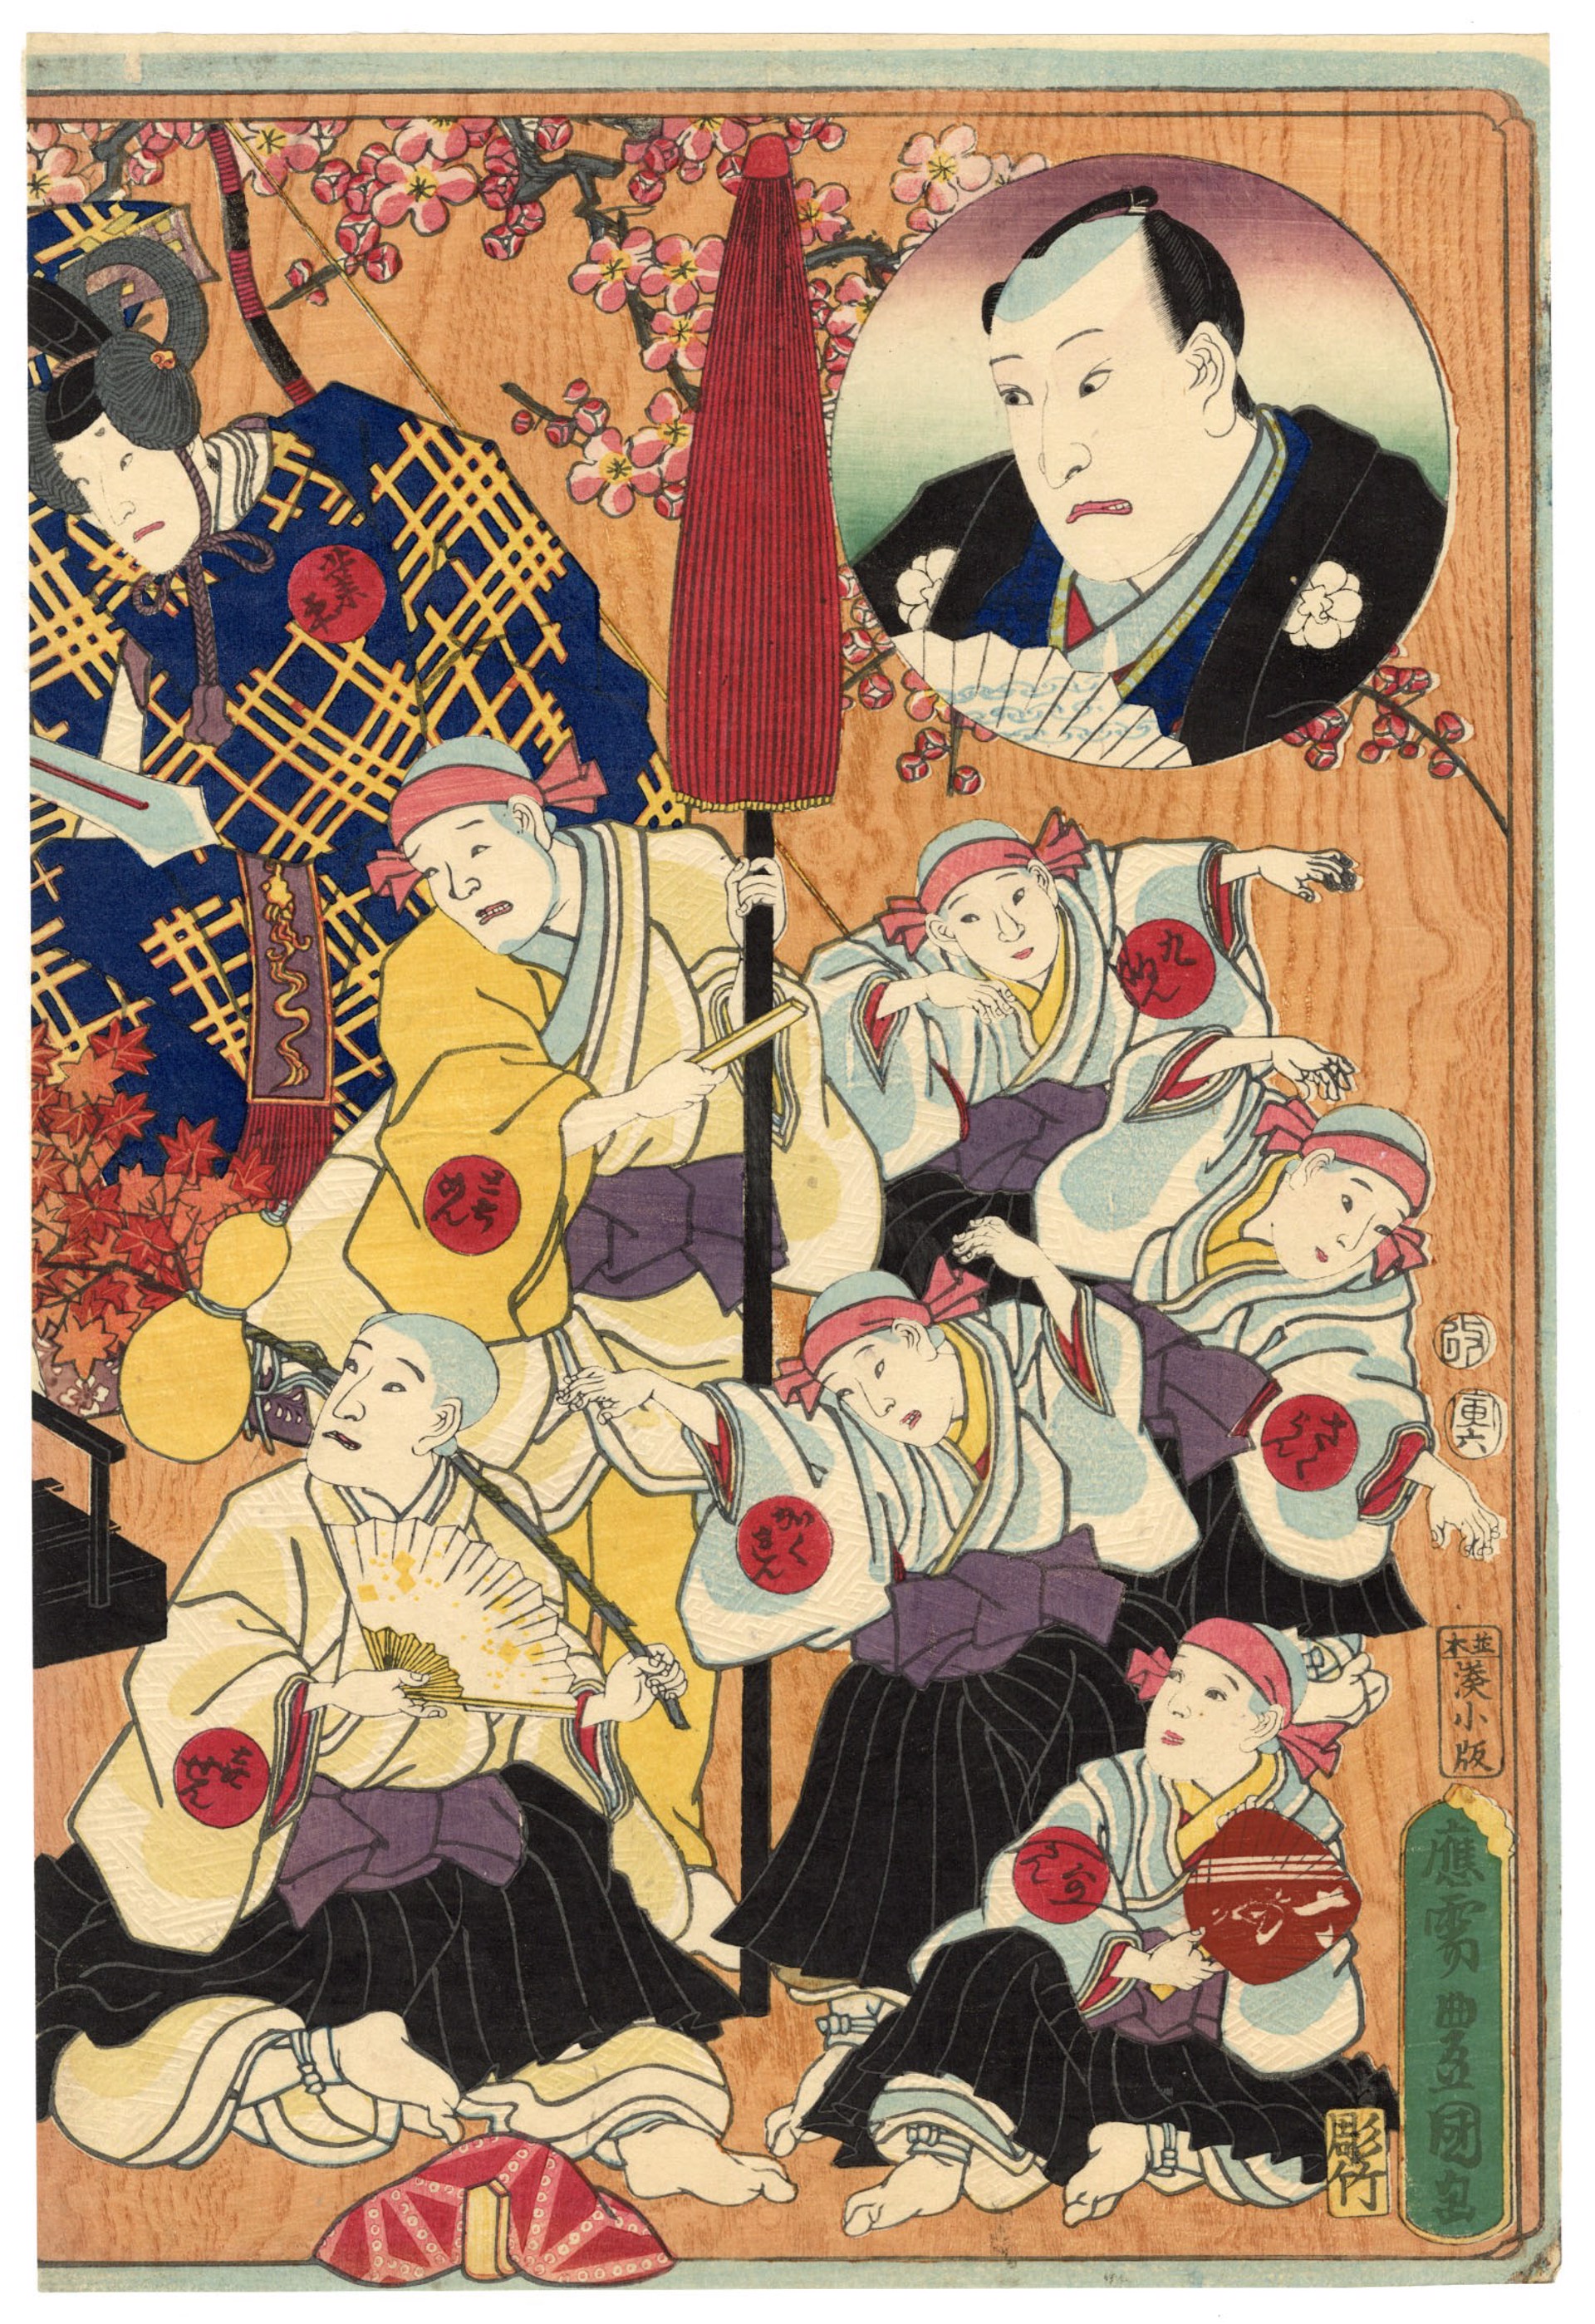 Kabuki Play "Rokkasen Sugata no Irodori" Performed at the Ichimura-za Theatre by Kunisada